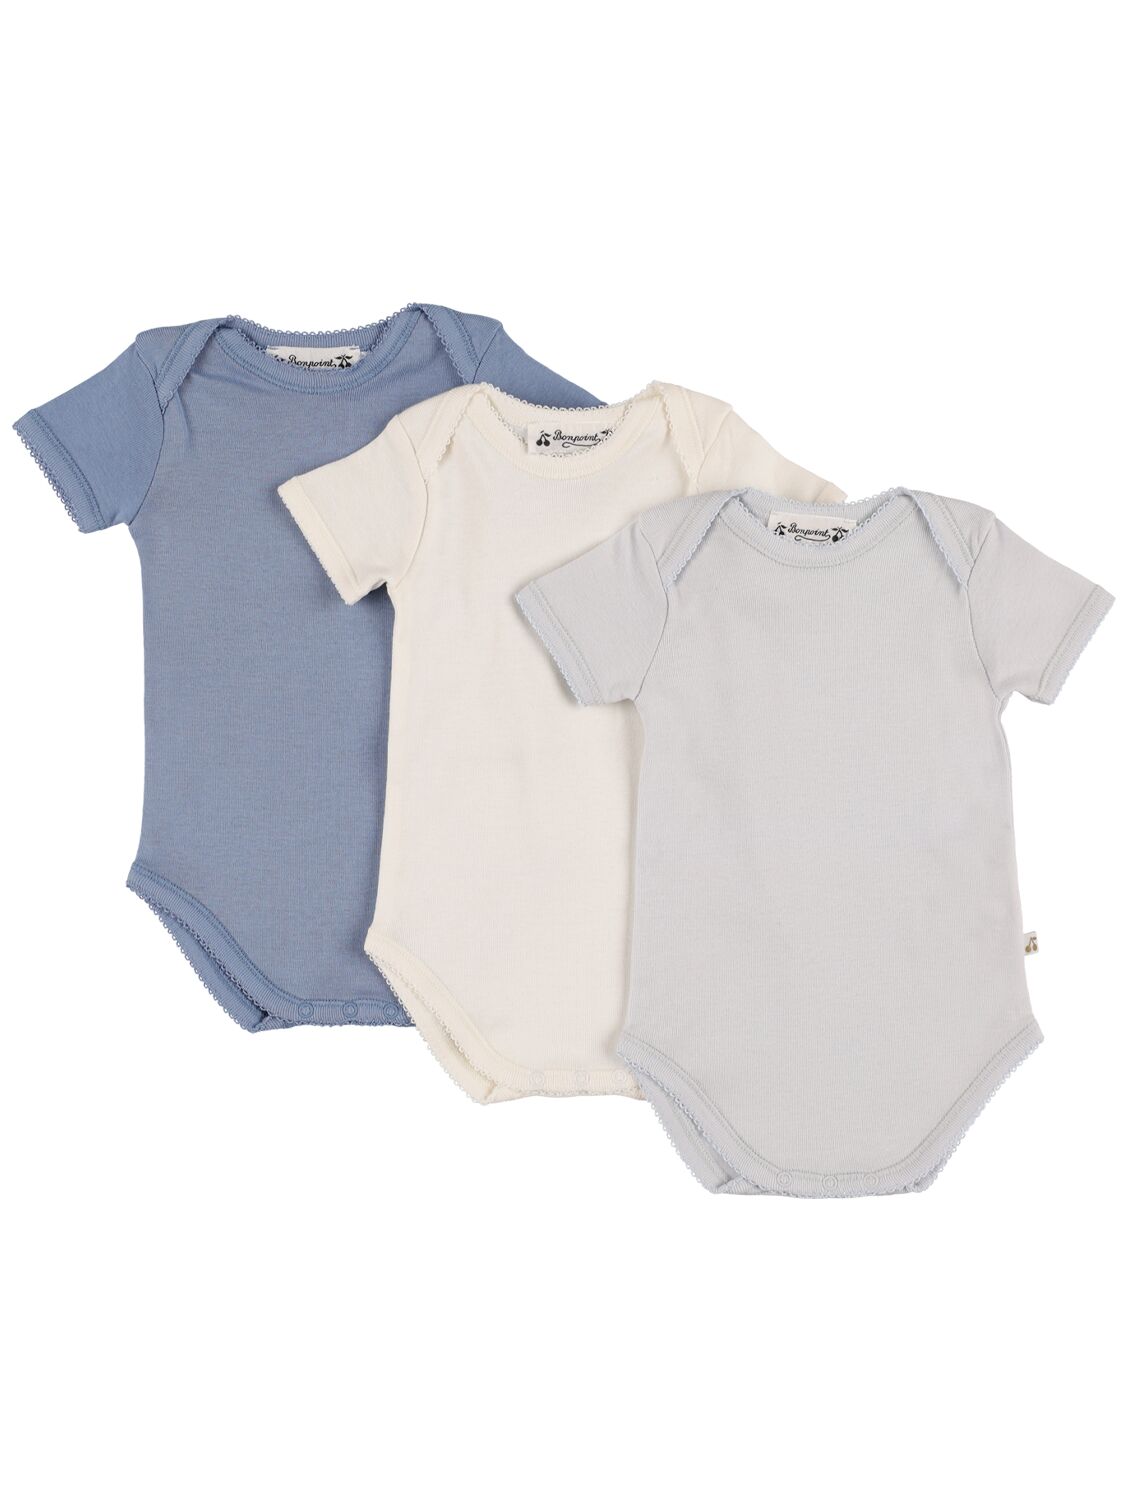 Bonpoint Babies' 棉质连体衣3件套装 In 스카이 블루